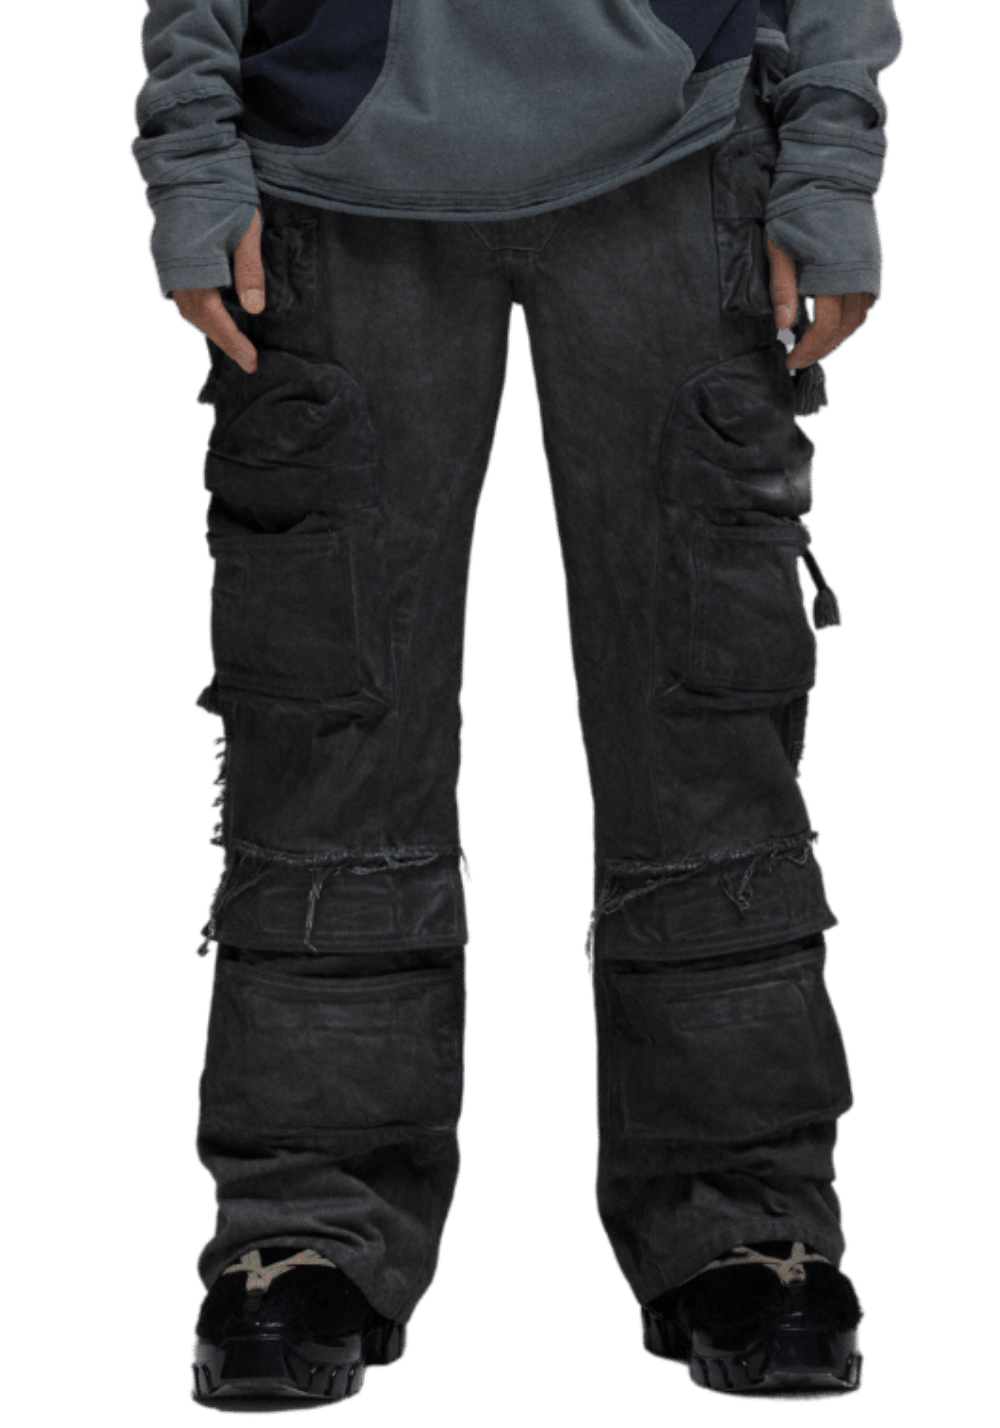 Multi Pocket Adjustable Washed Work Pants - PSYLOS 1, Multi Pocket Adjustable Washed Work Pants, Pants, D5ove, PSYLOS 1